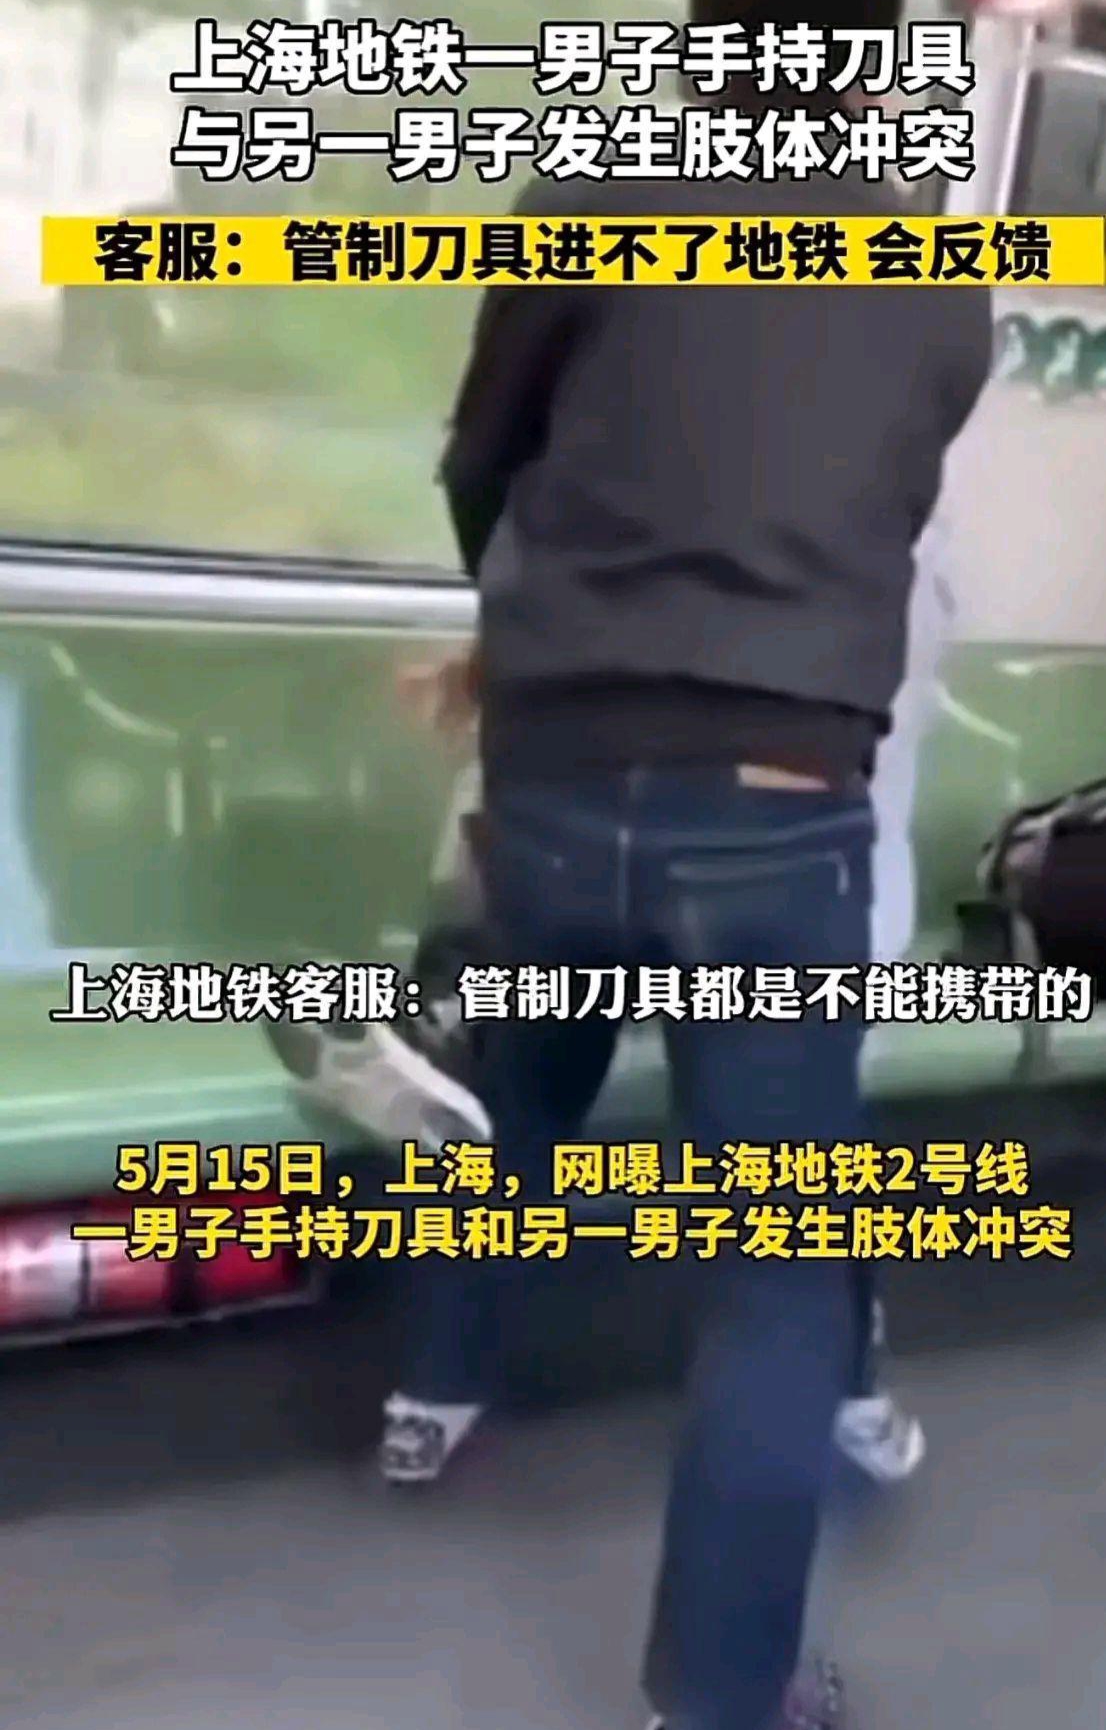 男子乘地铁手持刀具和一男子起冲突